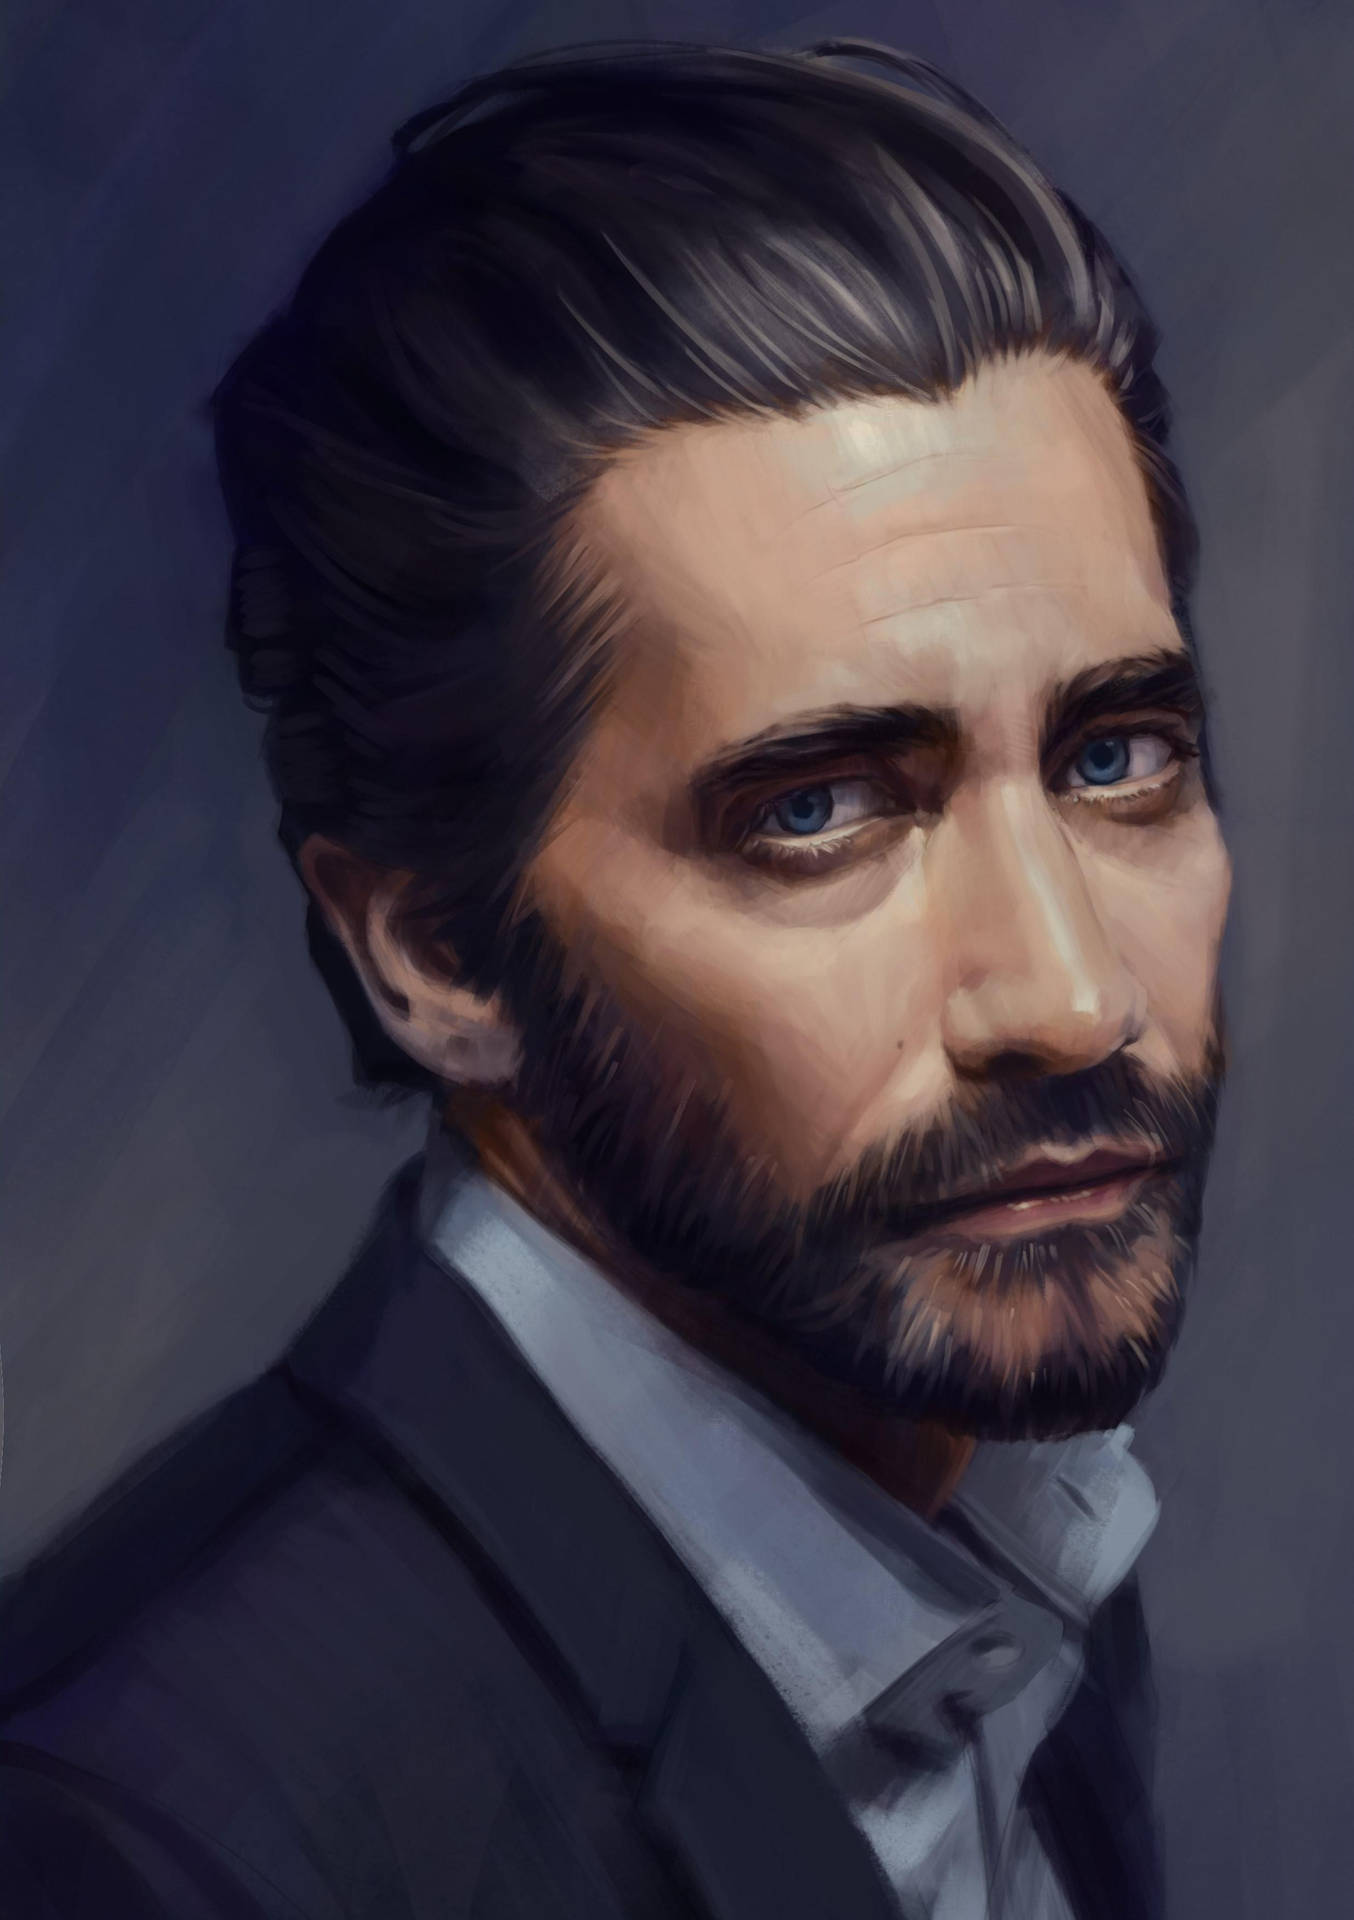 Jake Gyllenhaal Digital Painting Background